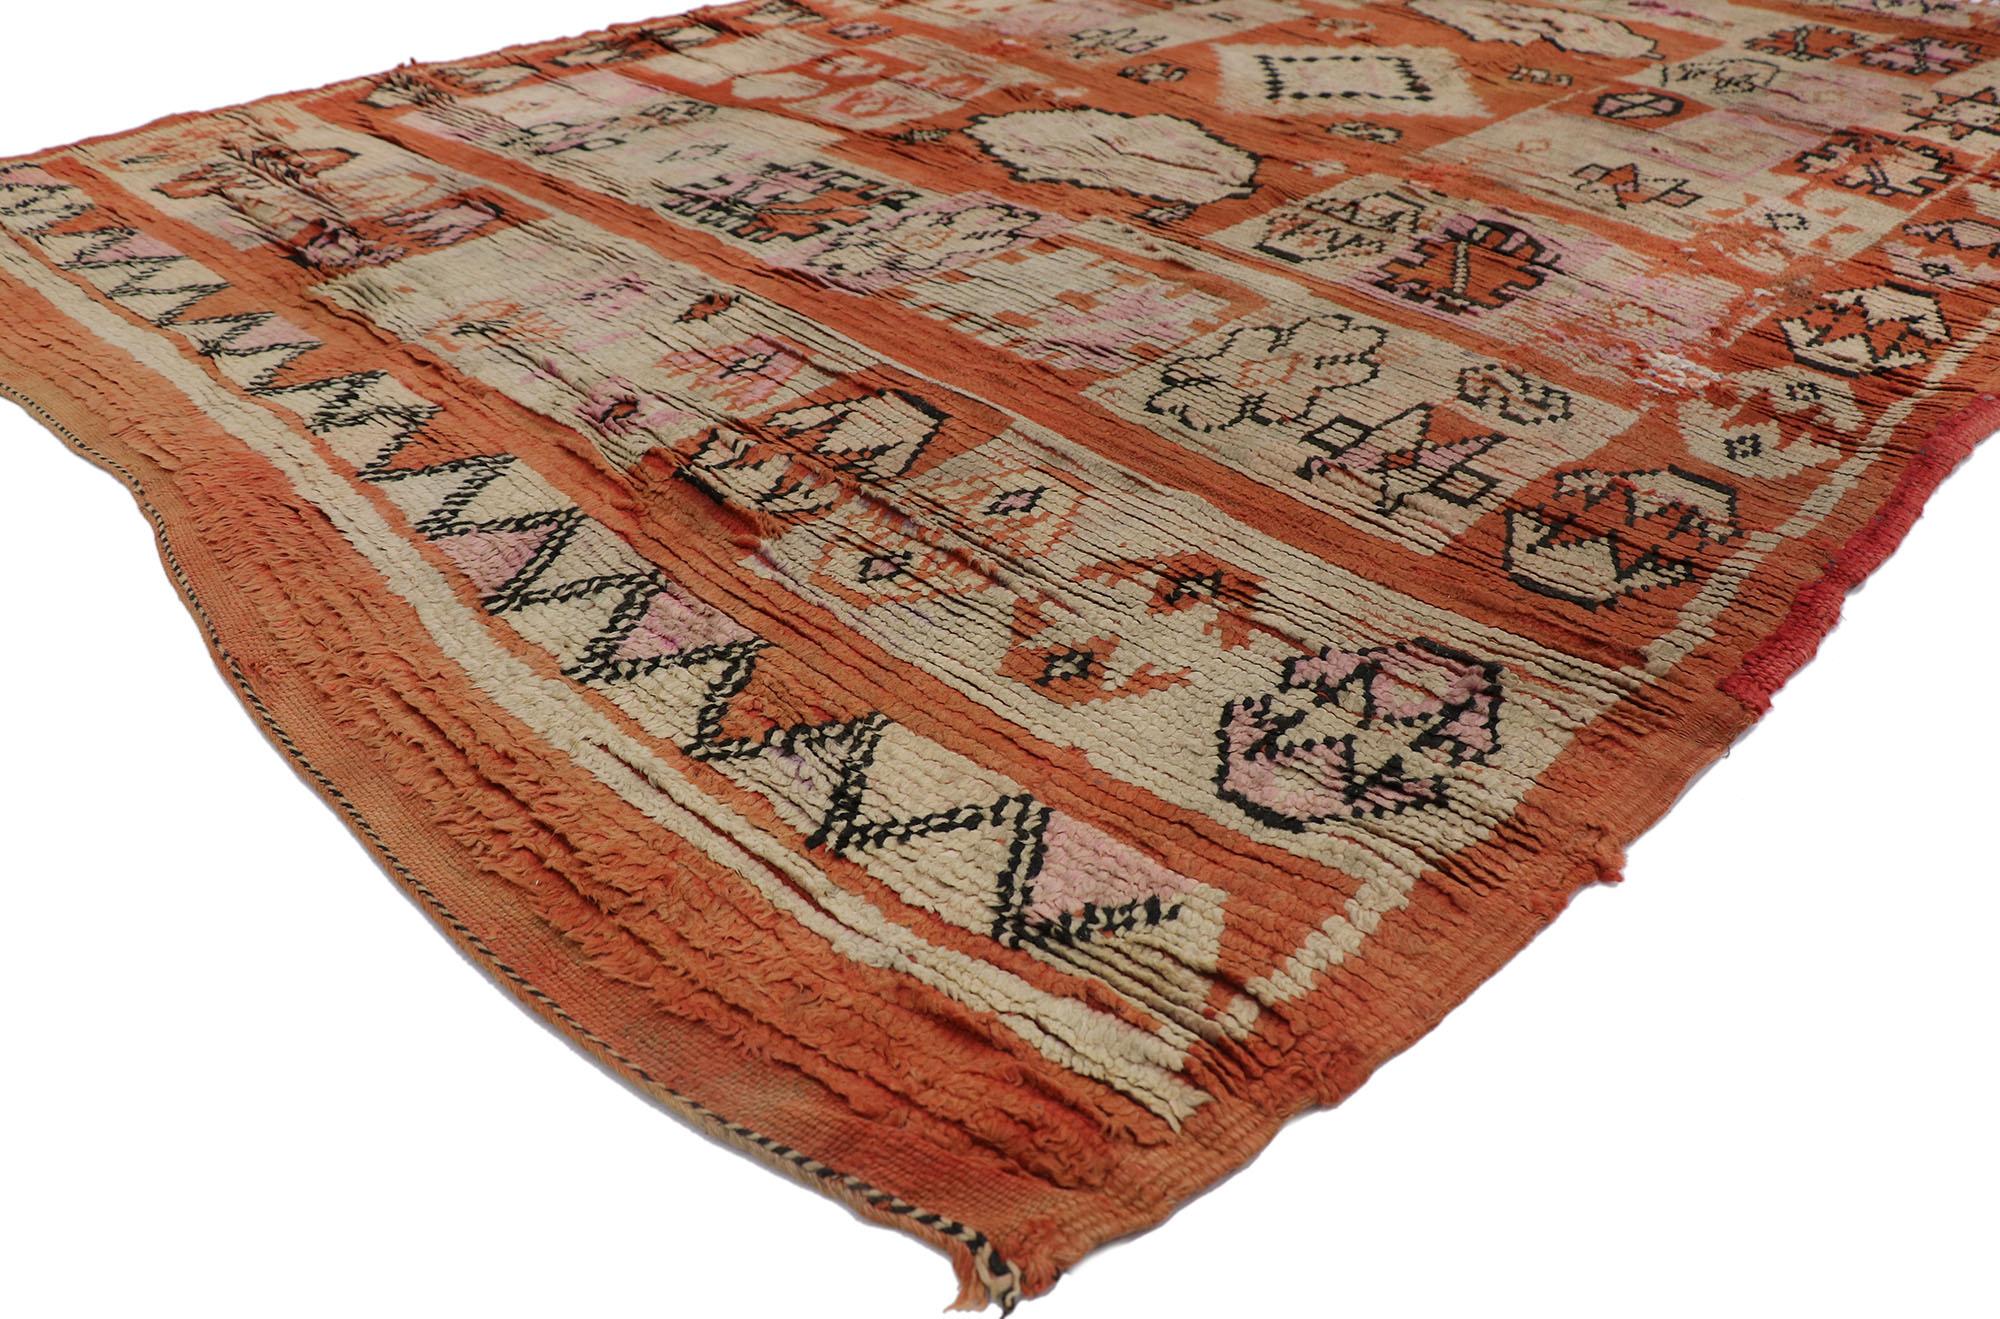 21448 Vintage Boujad Moroccan rug, 06'00 x 08'06.